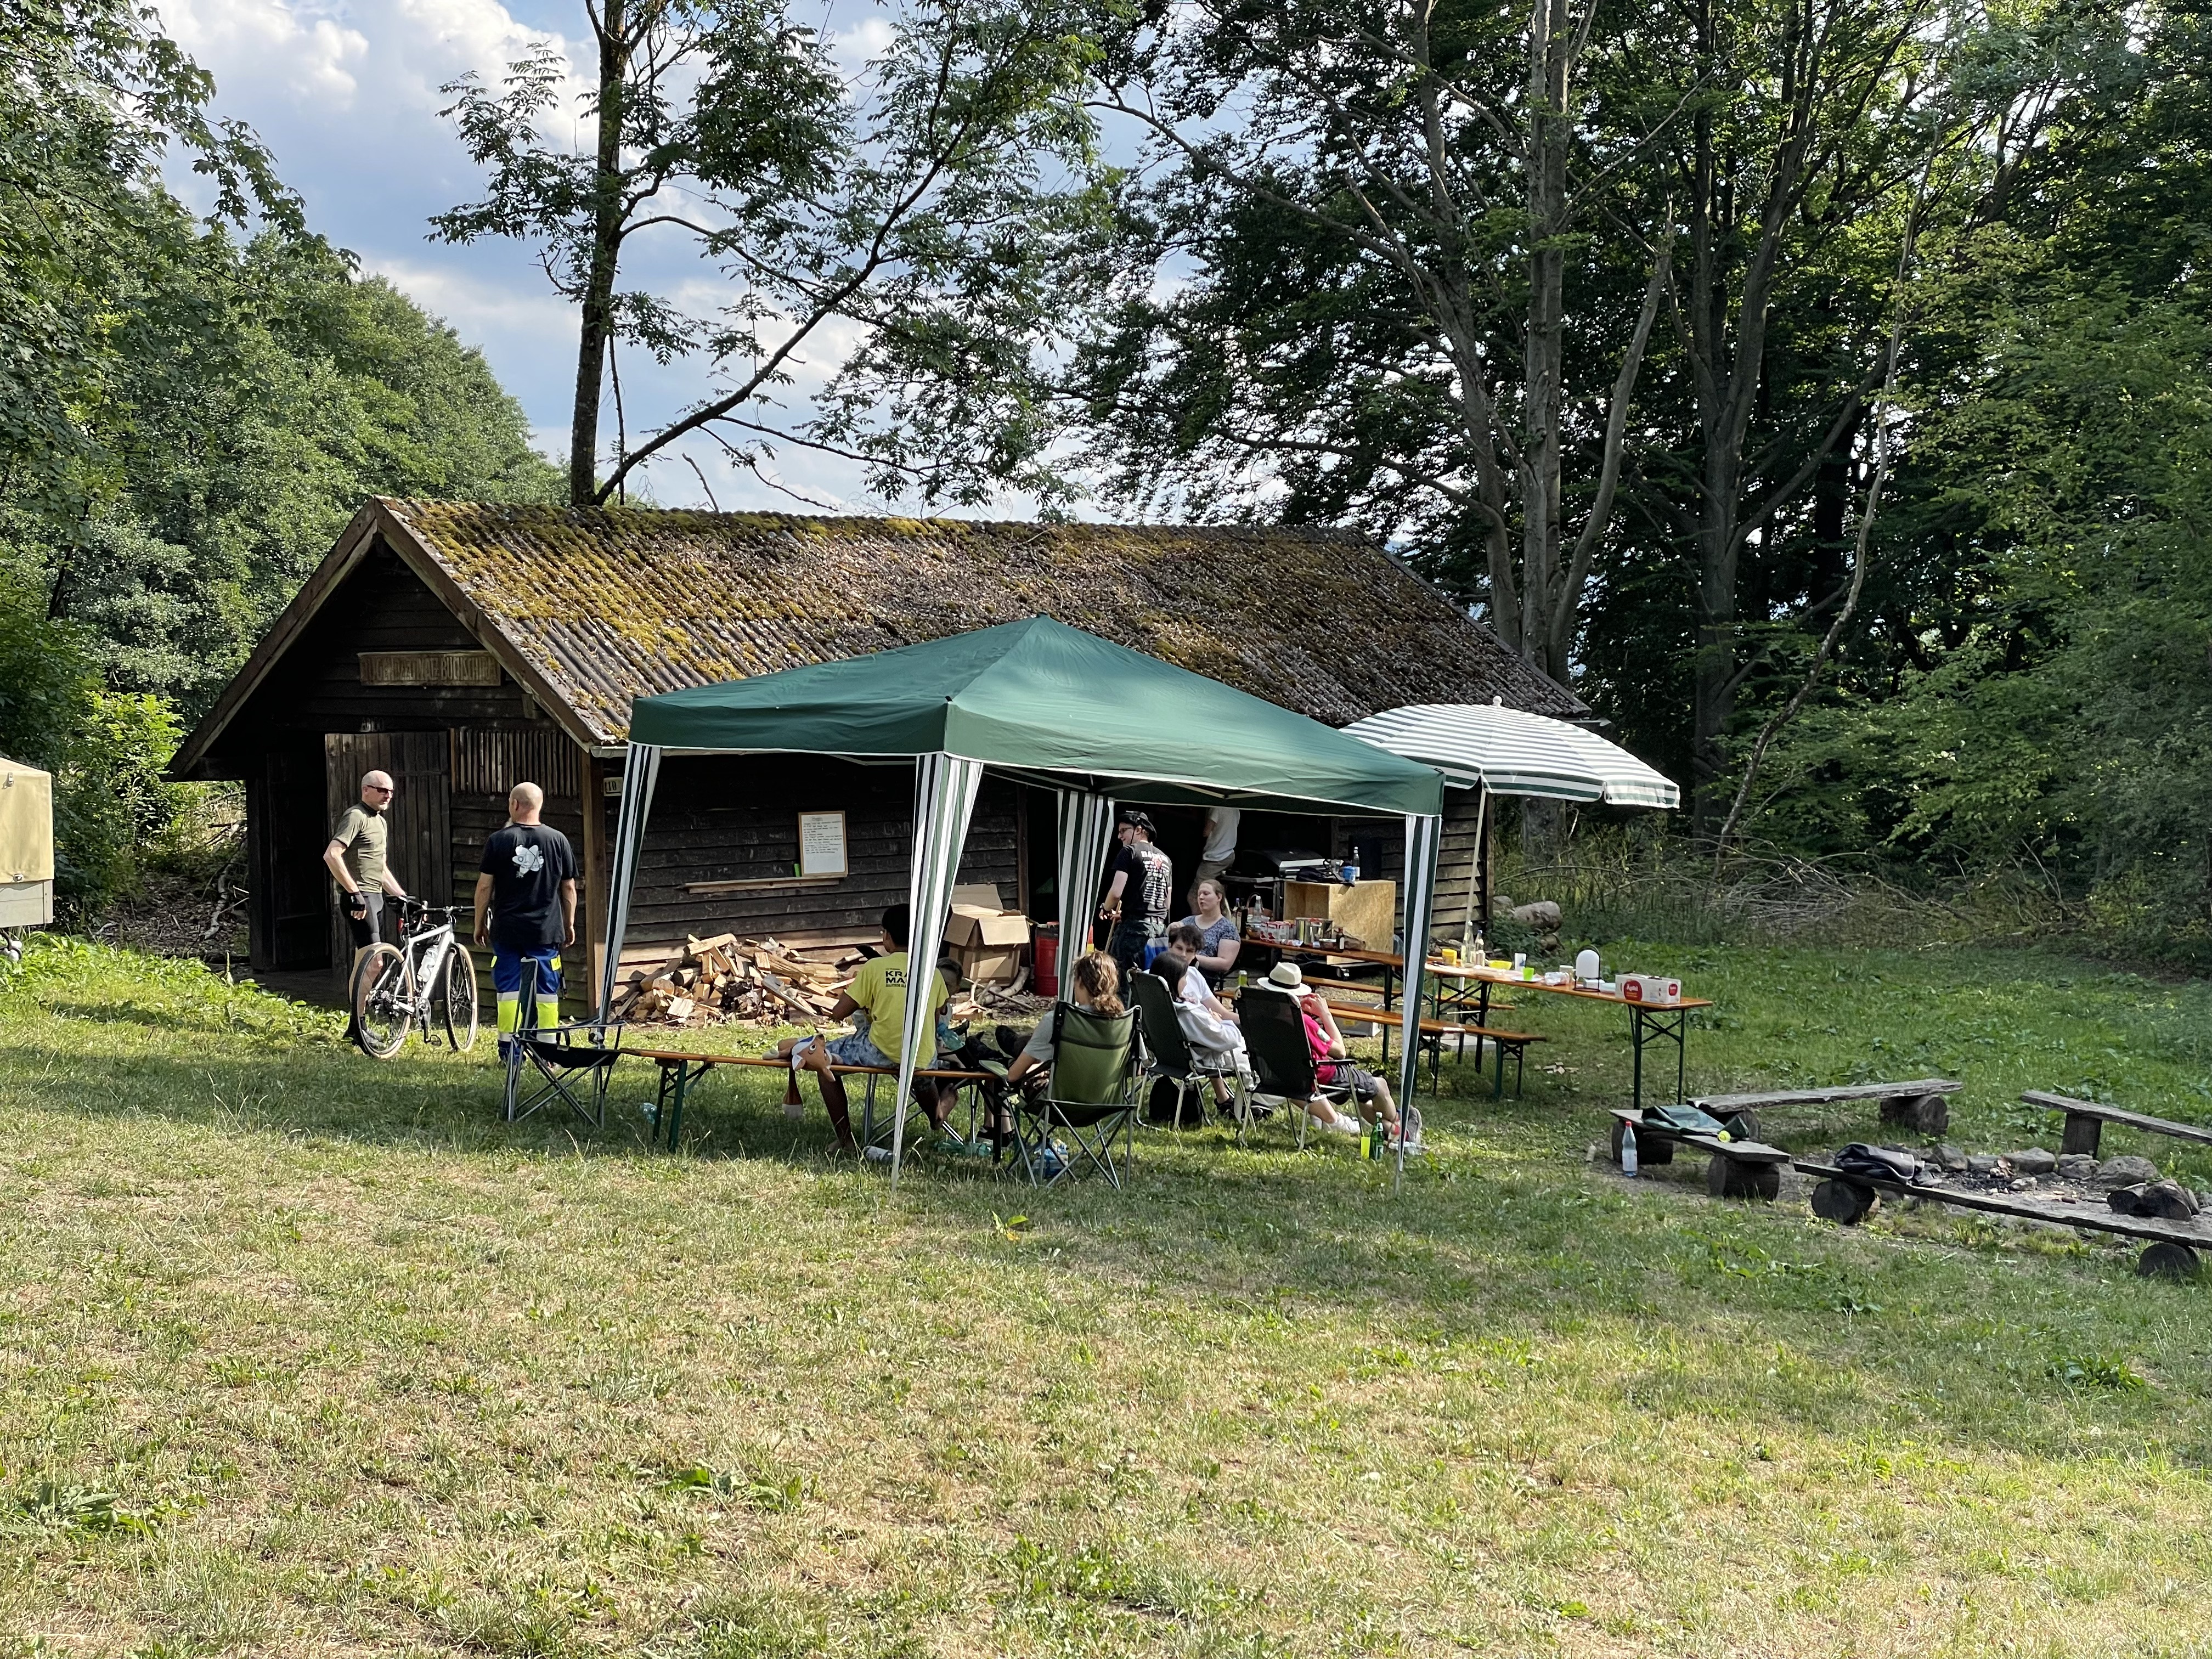 Grillhütte mit Campingausrüstung und Personen